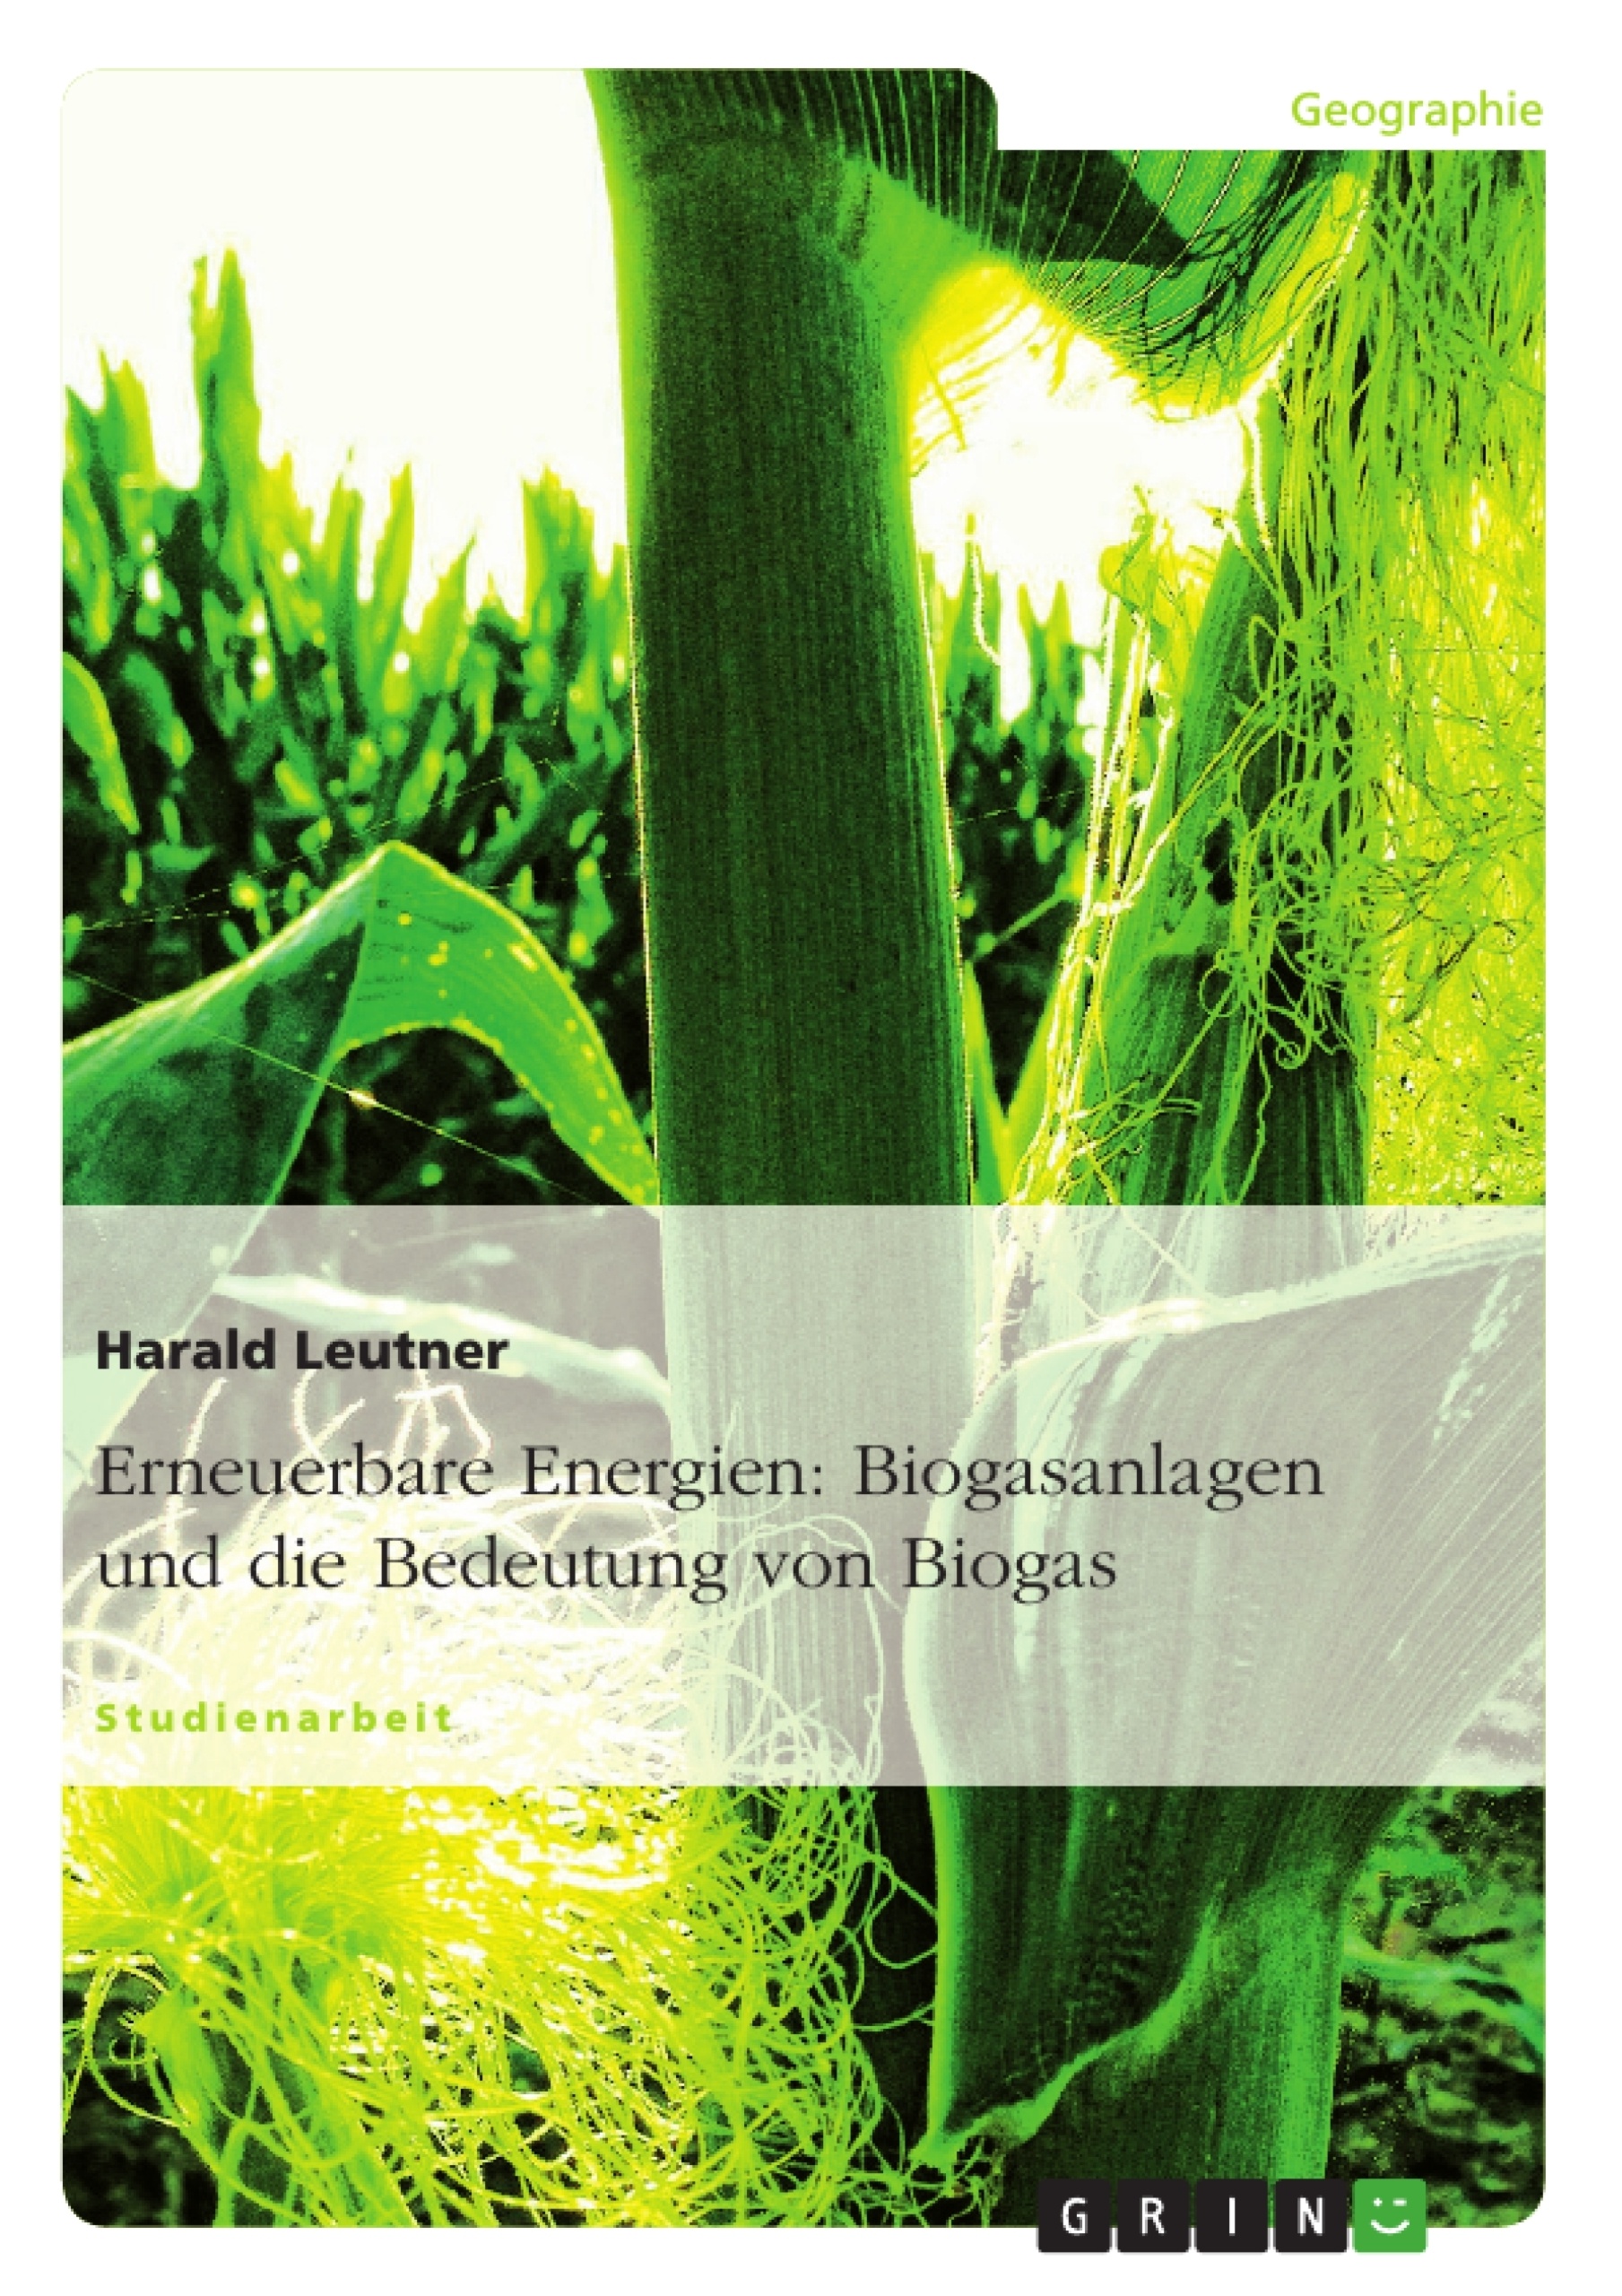 Título: Erneuerbare Energien: Biogasanlagen und die Bedeutung von Biogas